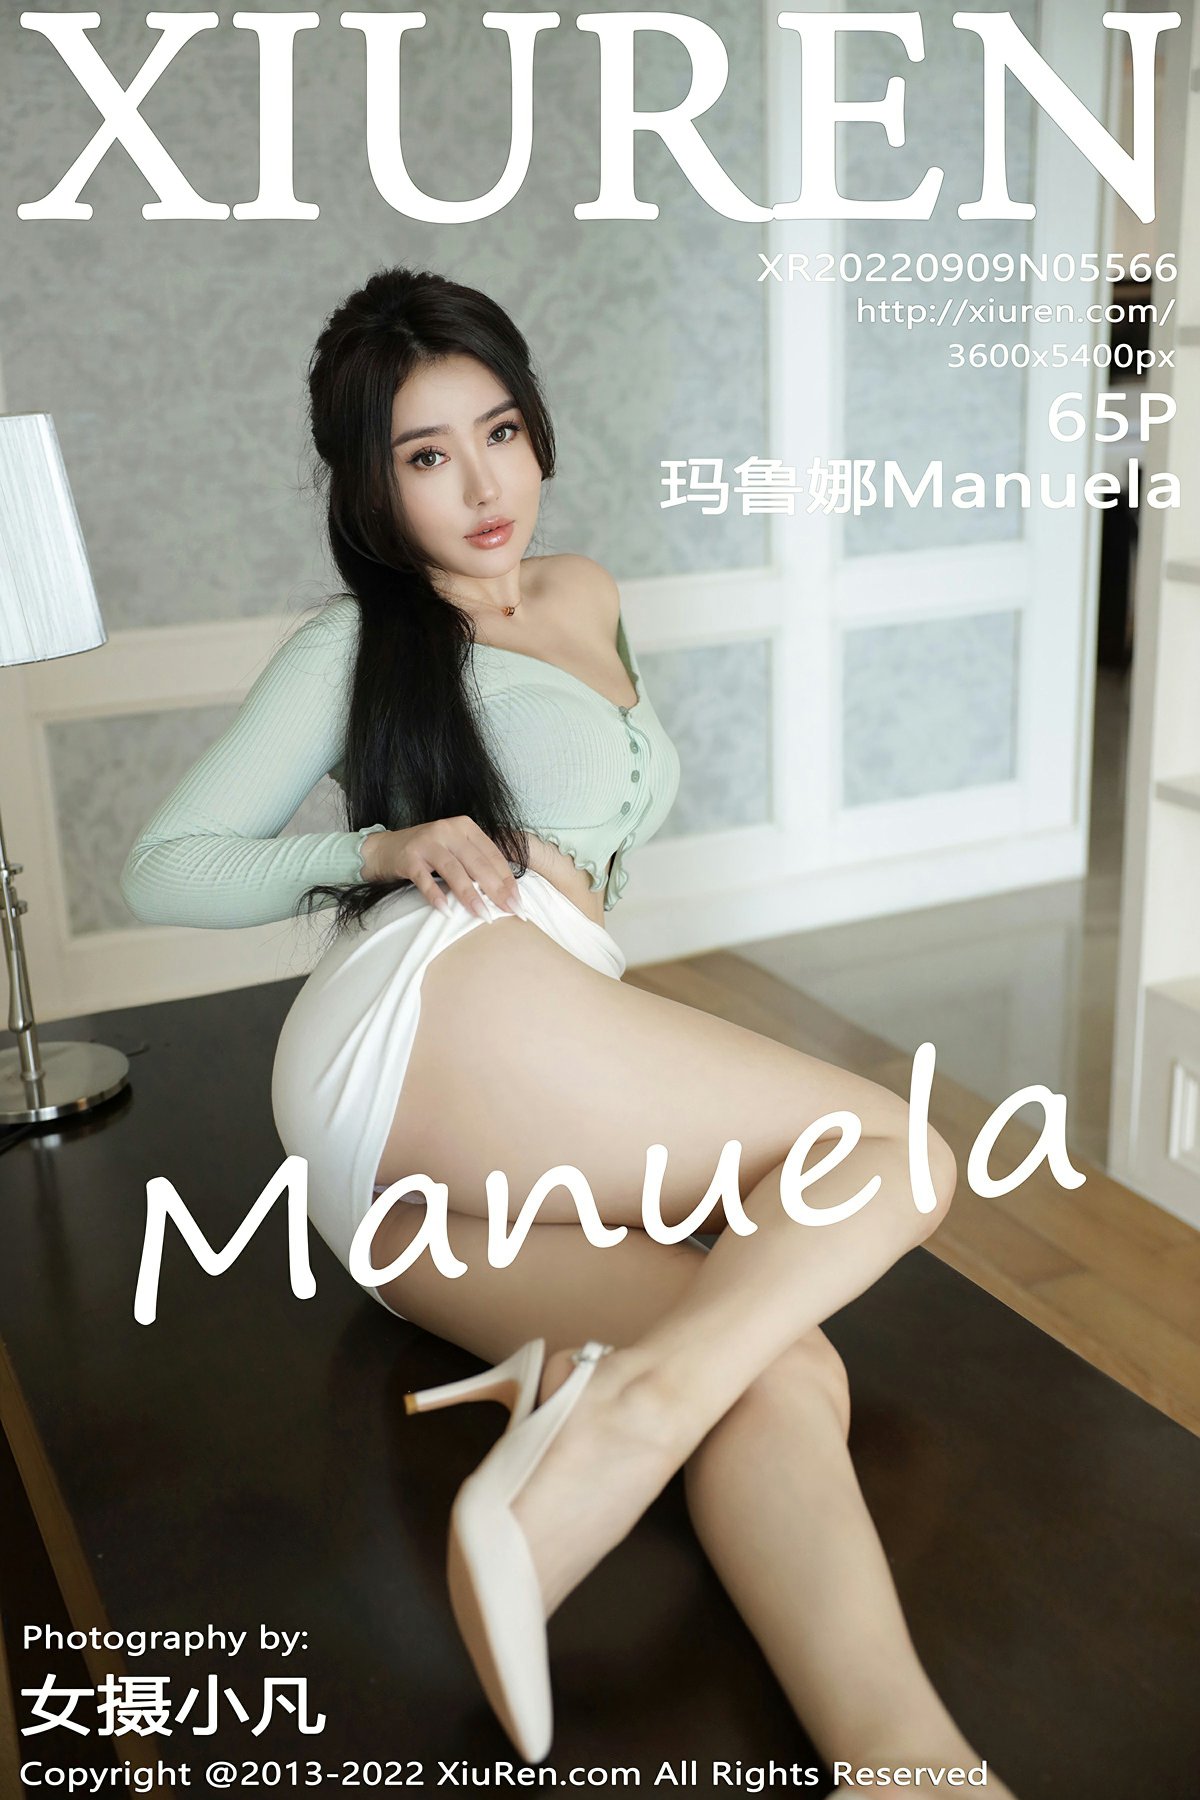 [XiuRen秀人网] 2022.09.09 No.5566 Manuela玛鲁娜